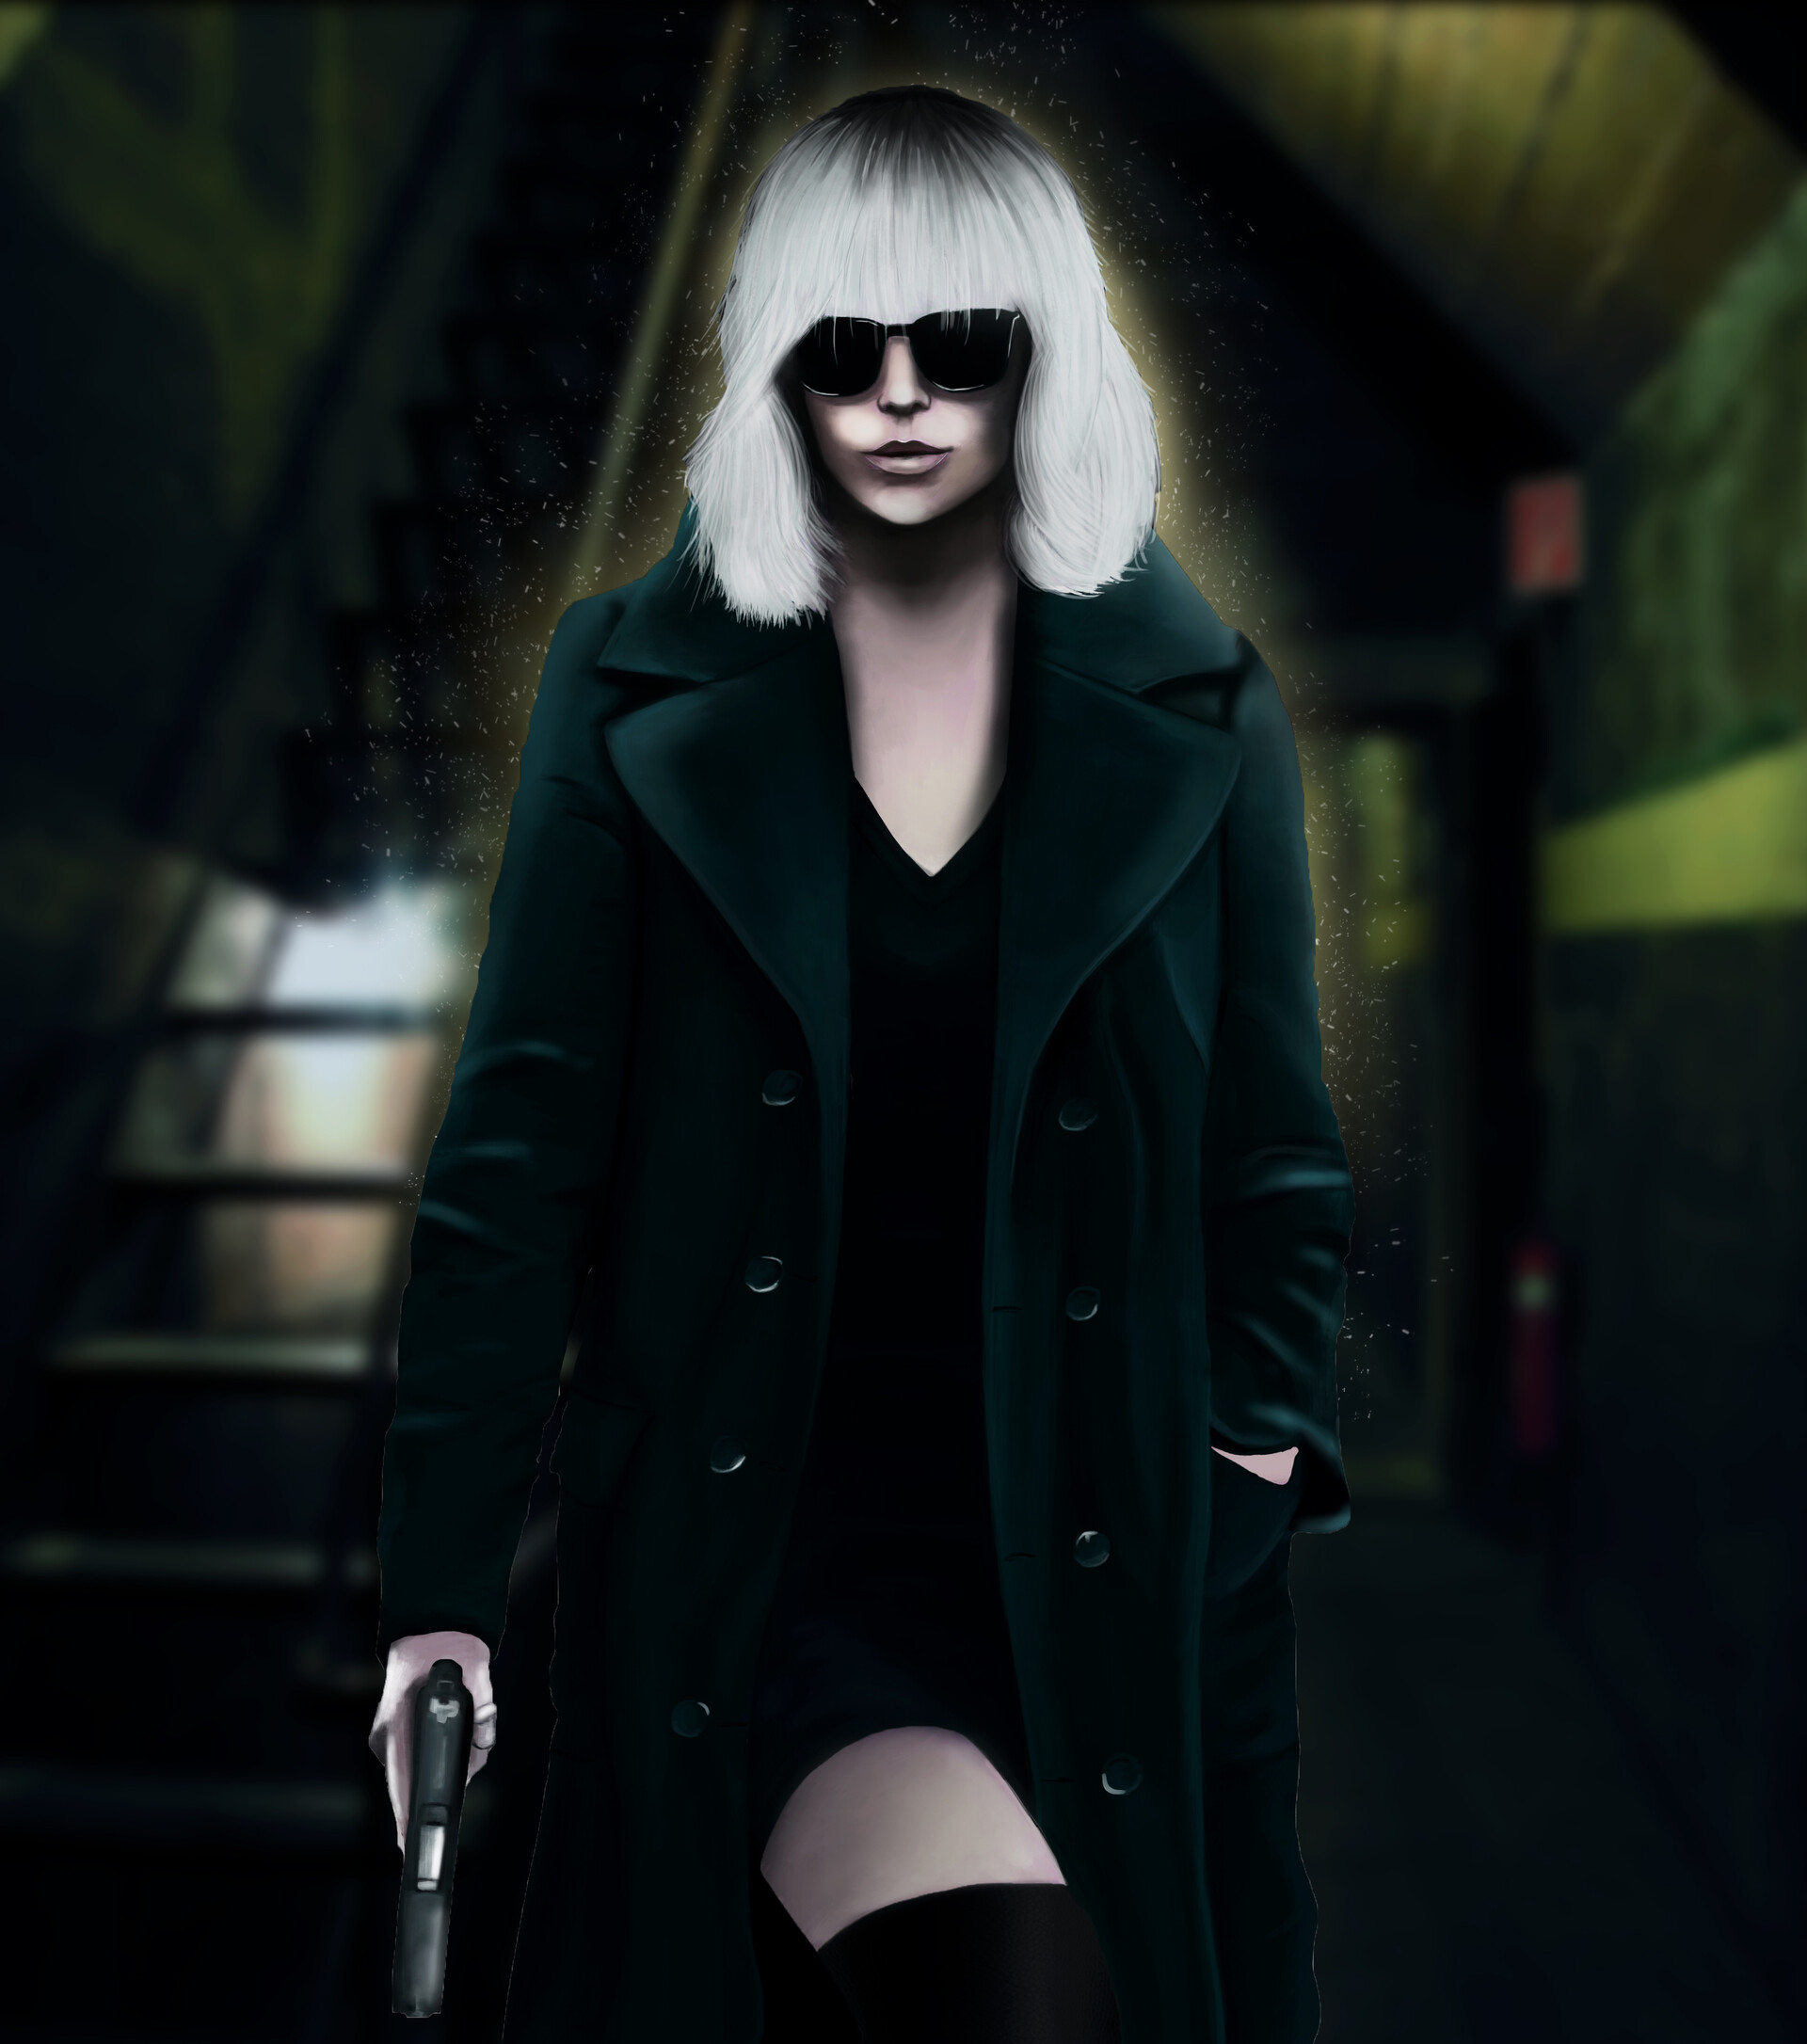 Atomic Blonde Movie Blond Hair Black Suit Black Coat Fan Art Artwork Digital Painting Digital Art 1920x2172